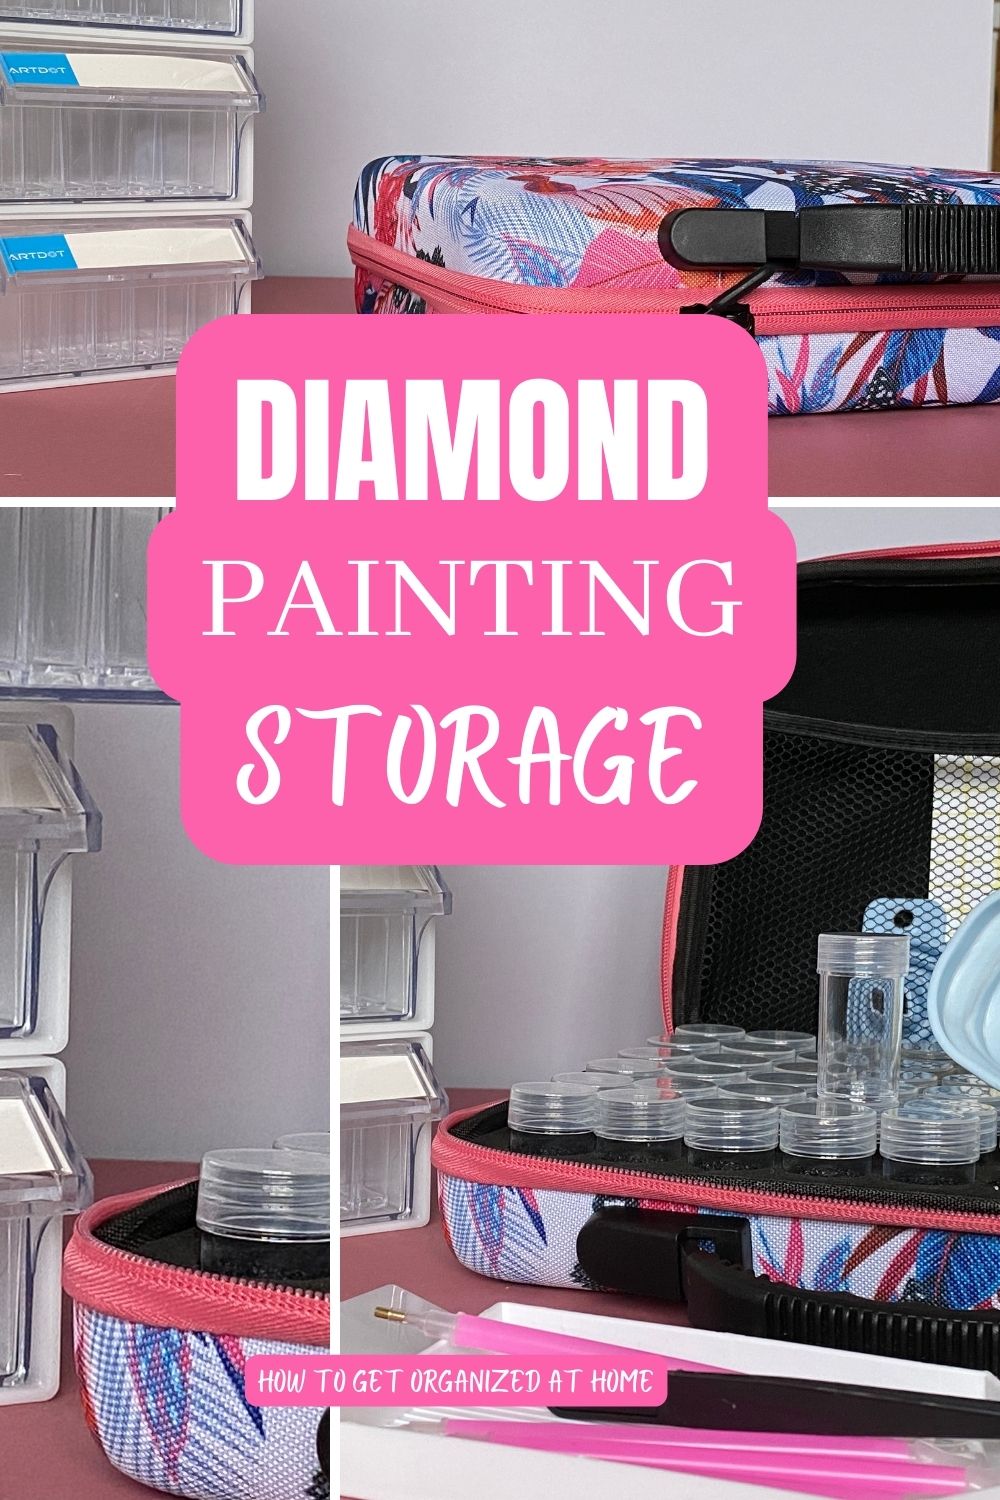 Diamond Storage Containers For Diamond Painting